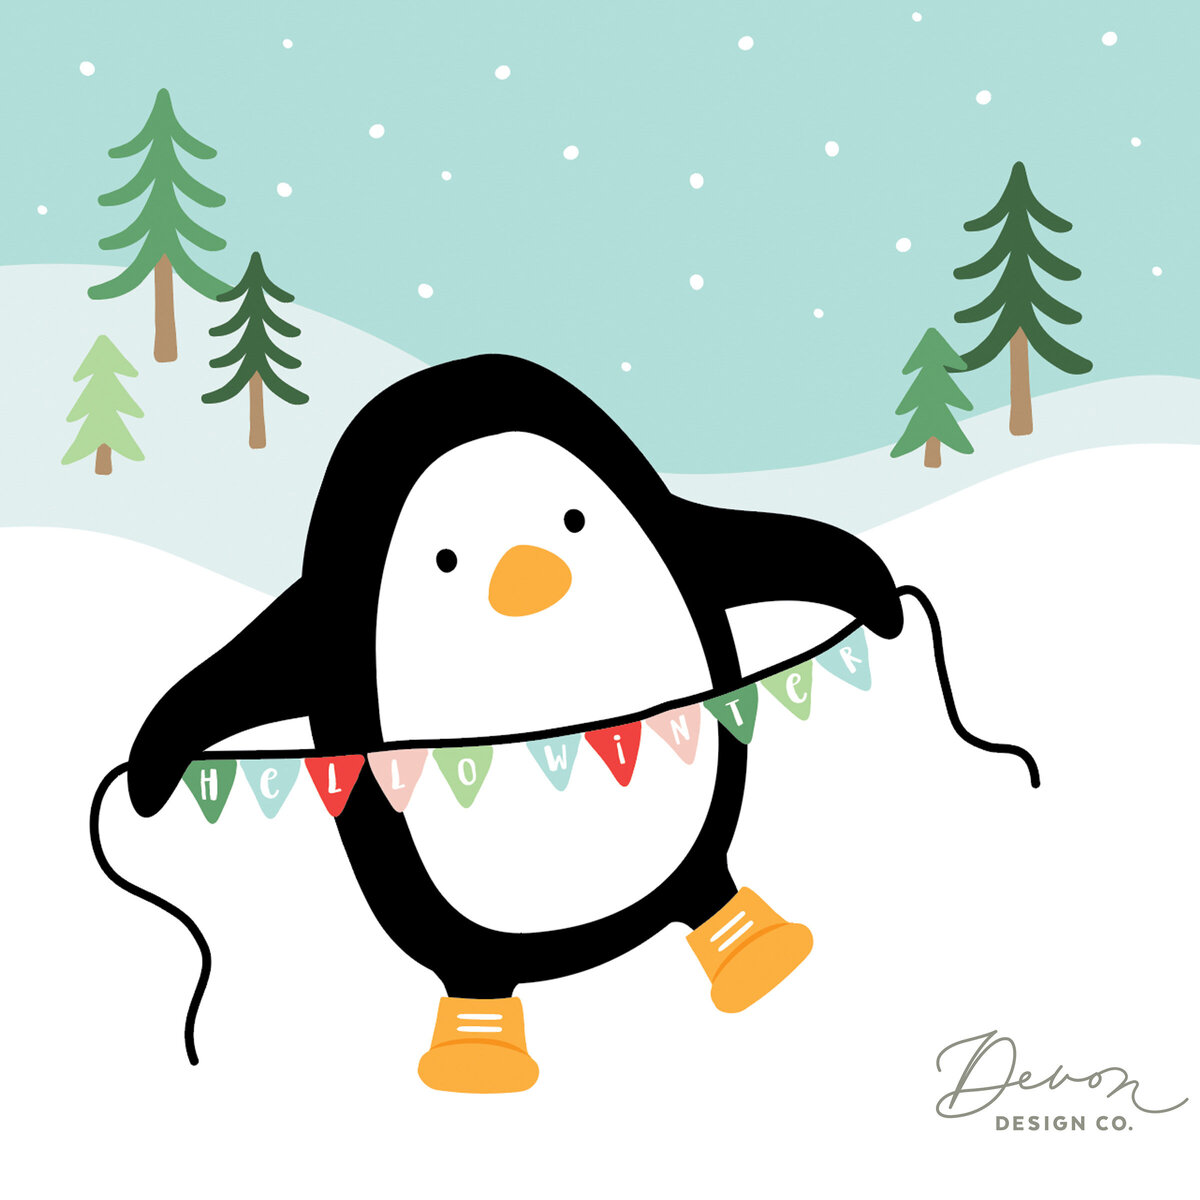 Devon-Design-Co_Christmas-Penguin